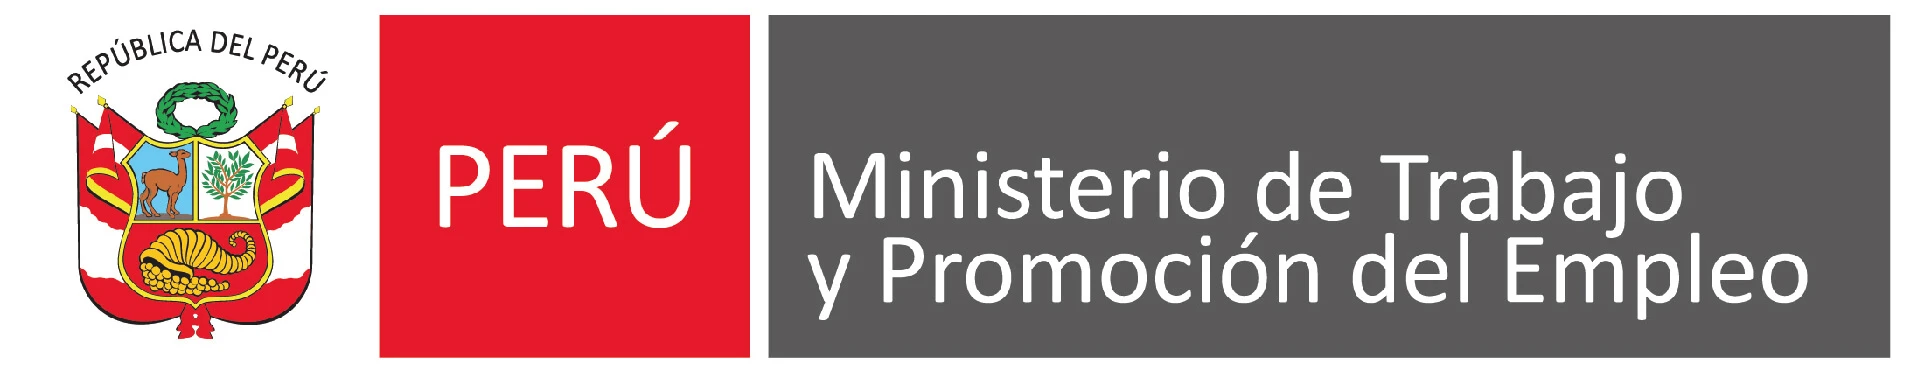 Acreditación del ministerio de trabajao y promoción del empleo